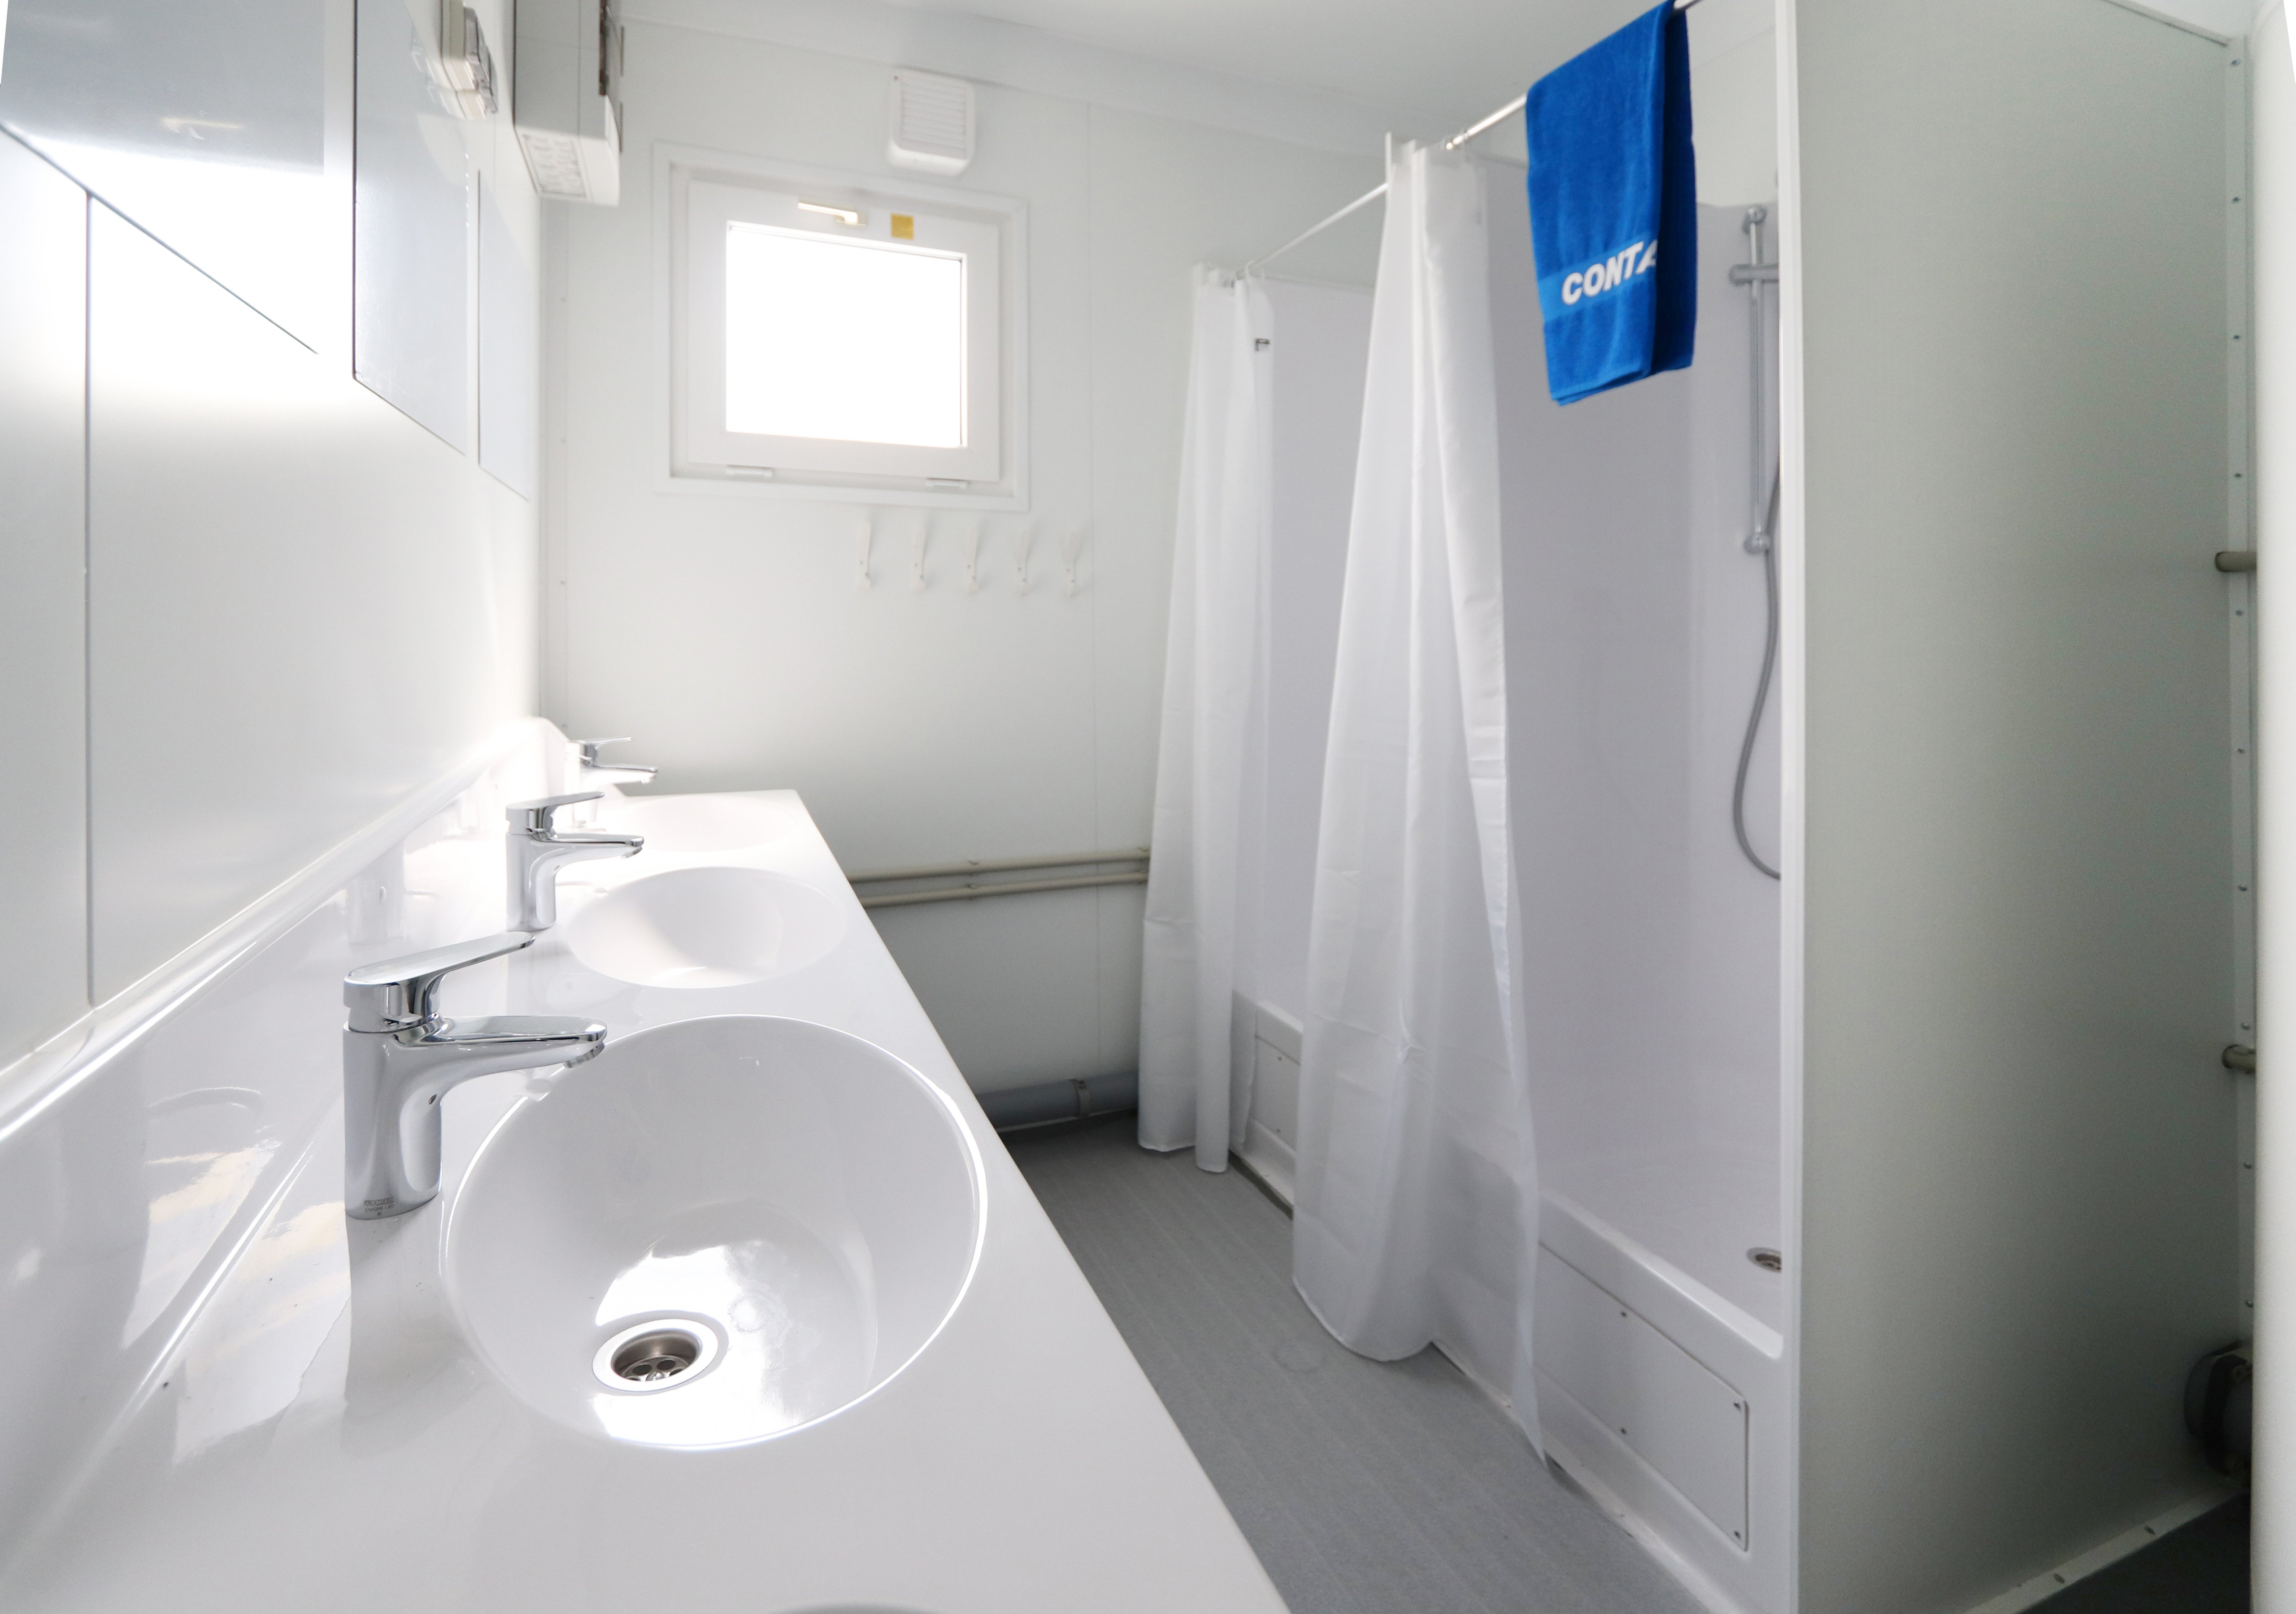 Noleggiare moduli ad uso docce e assicurarsi comfort e igiene